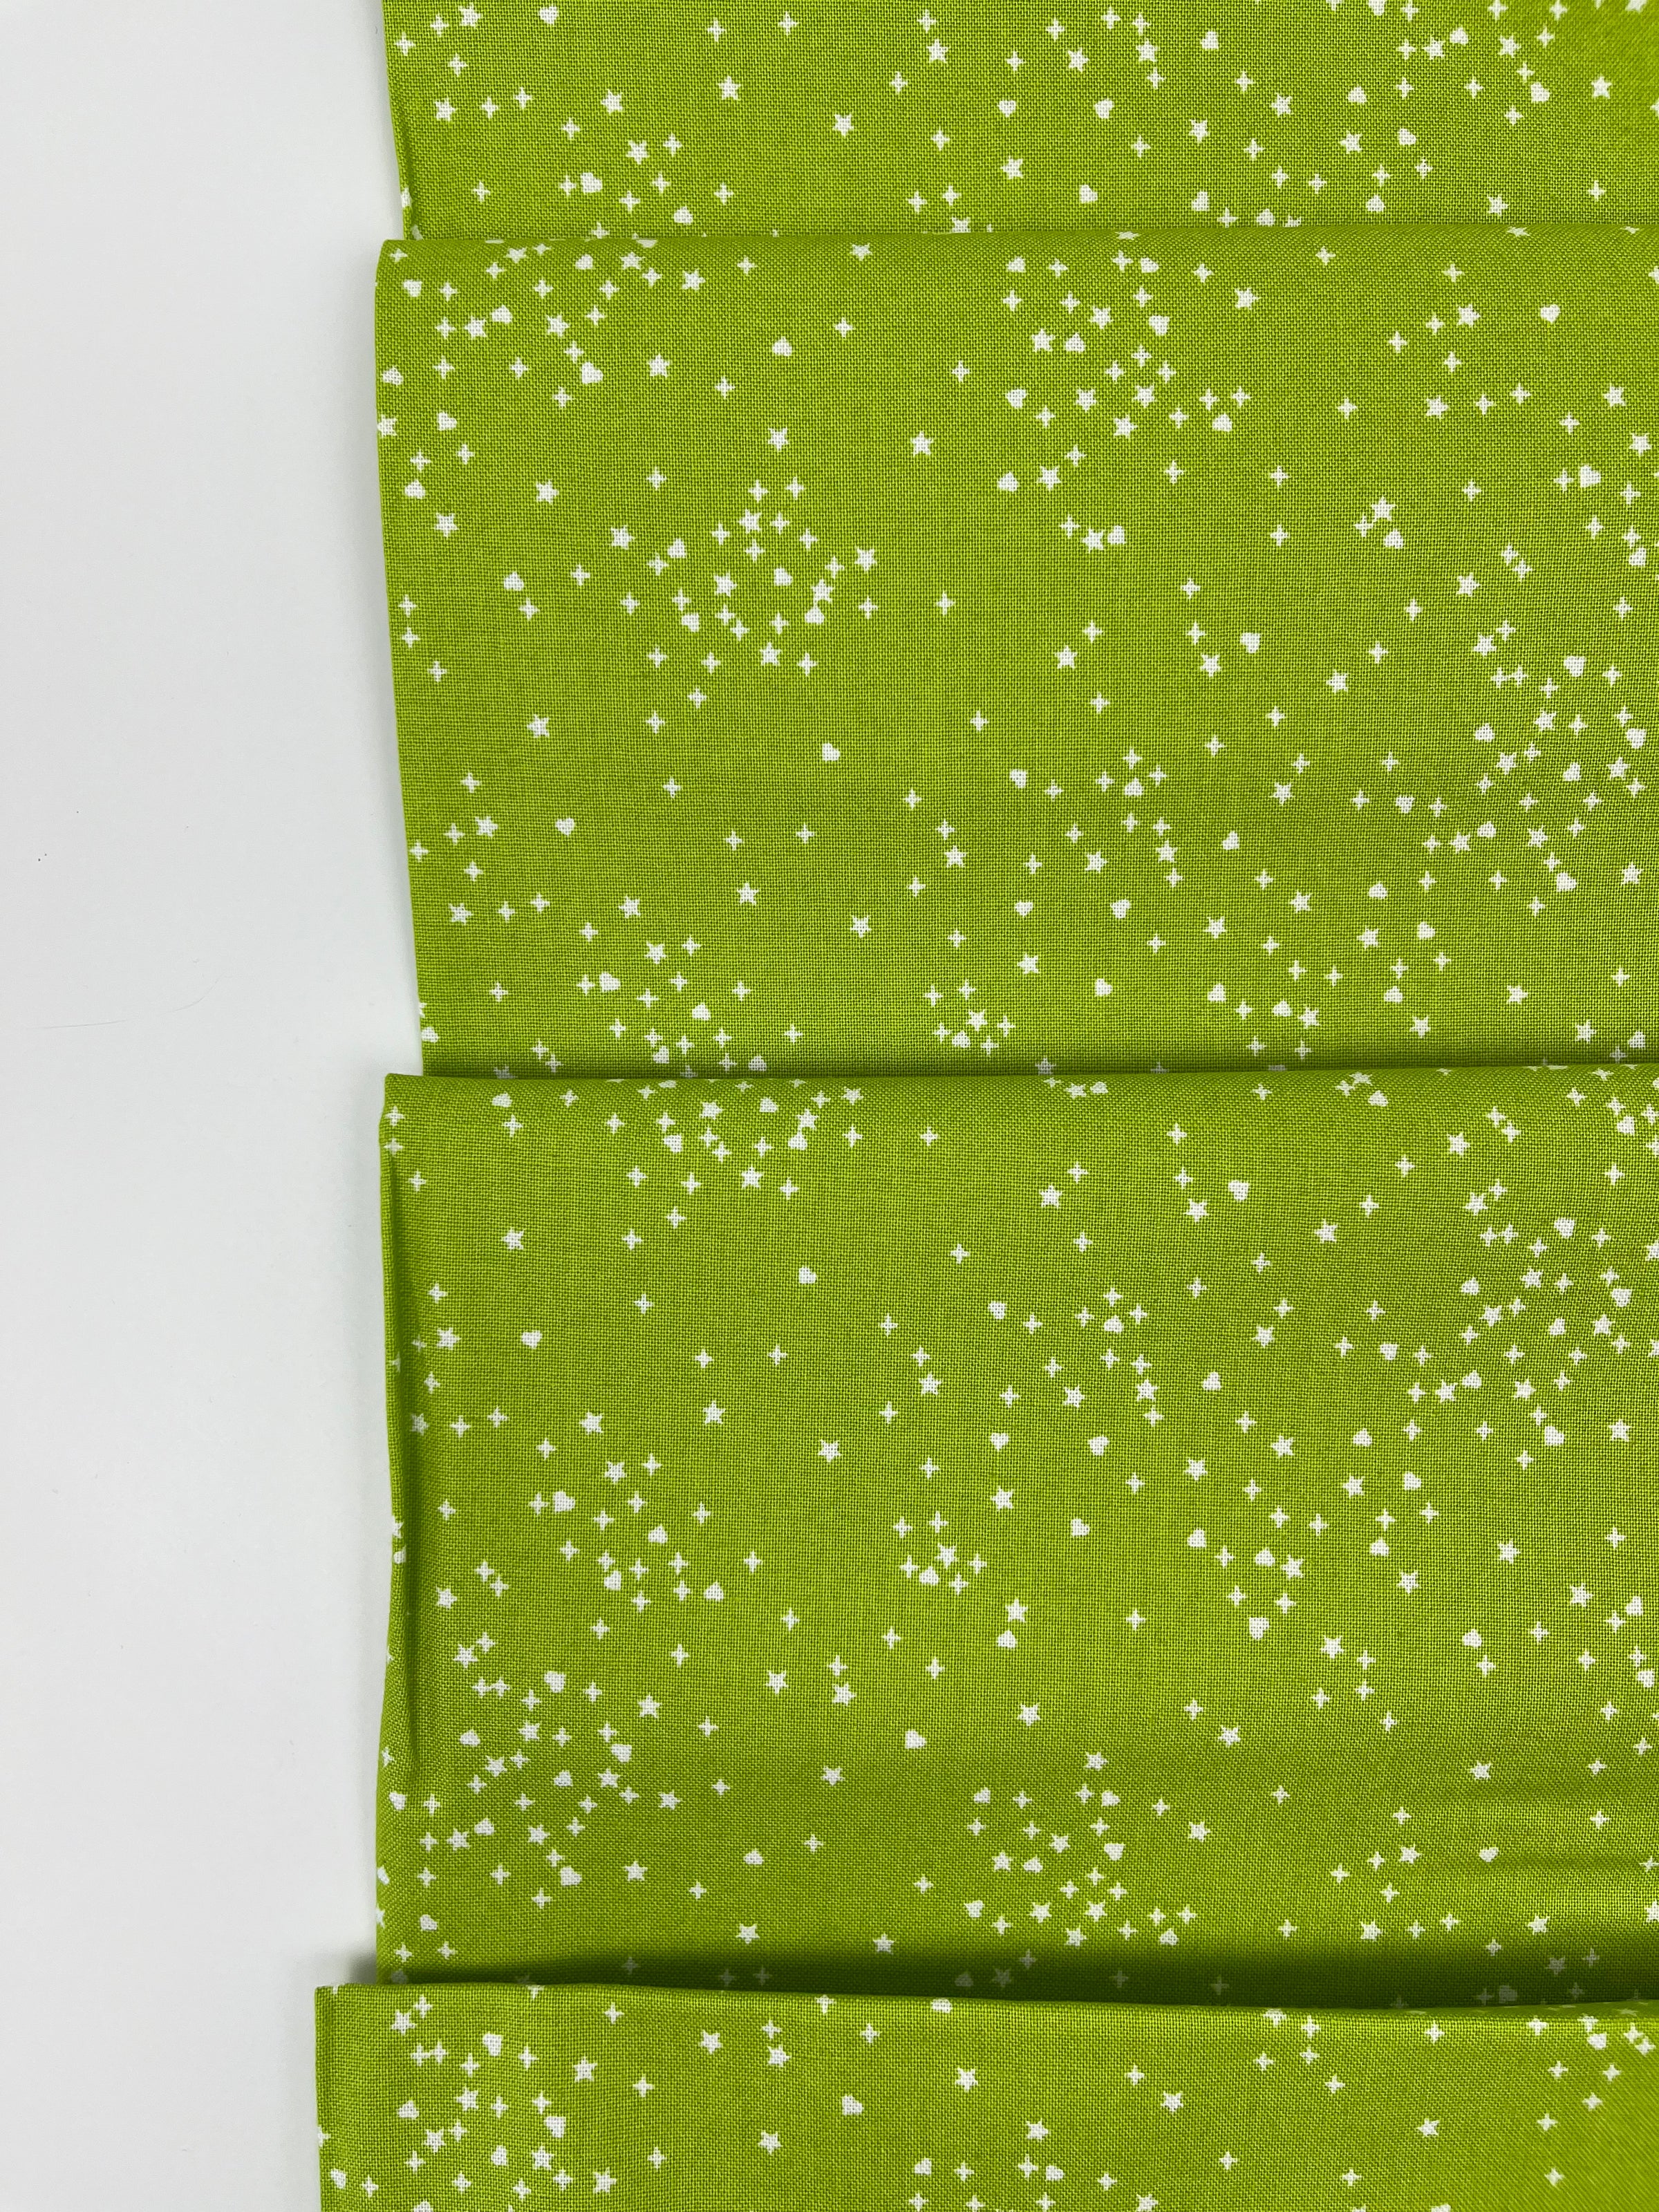 Hearts & Stars // Yellow Green // Andover Fabrics